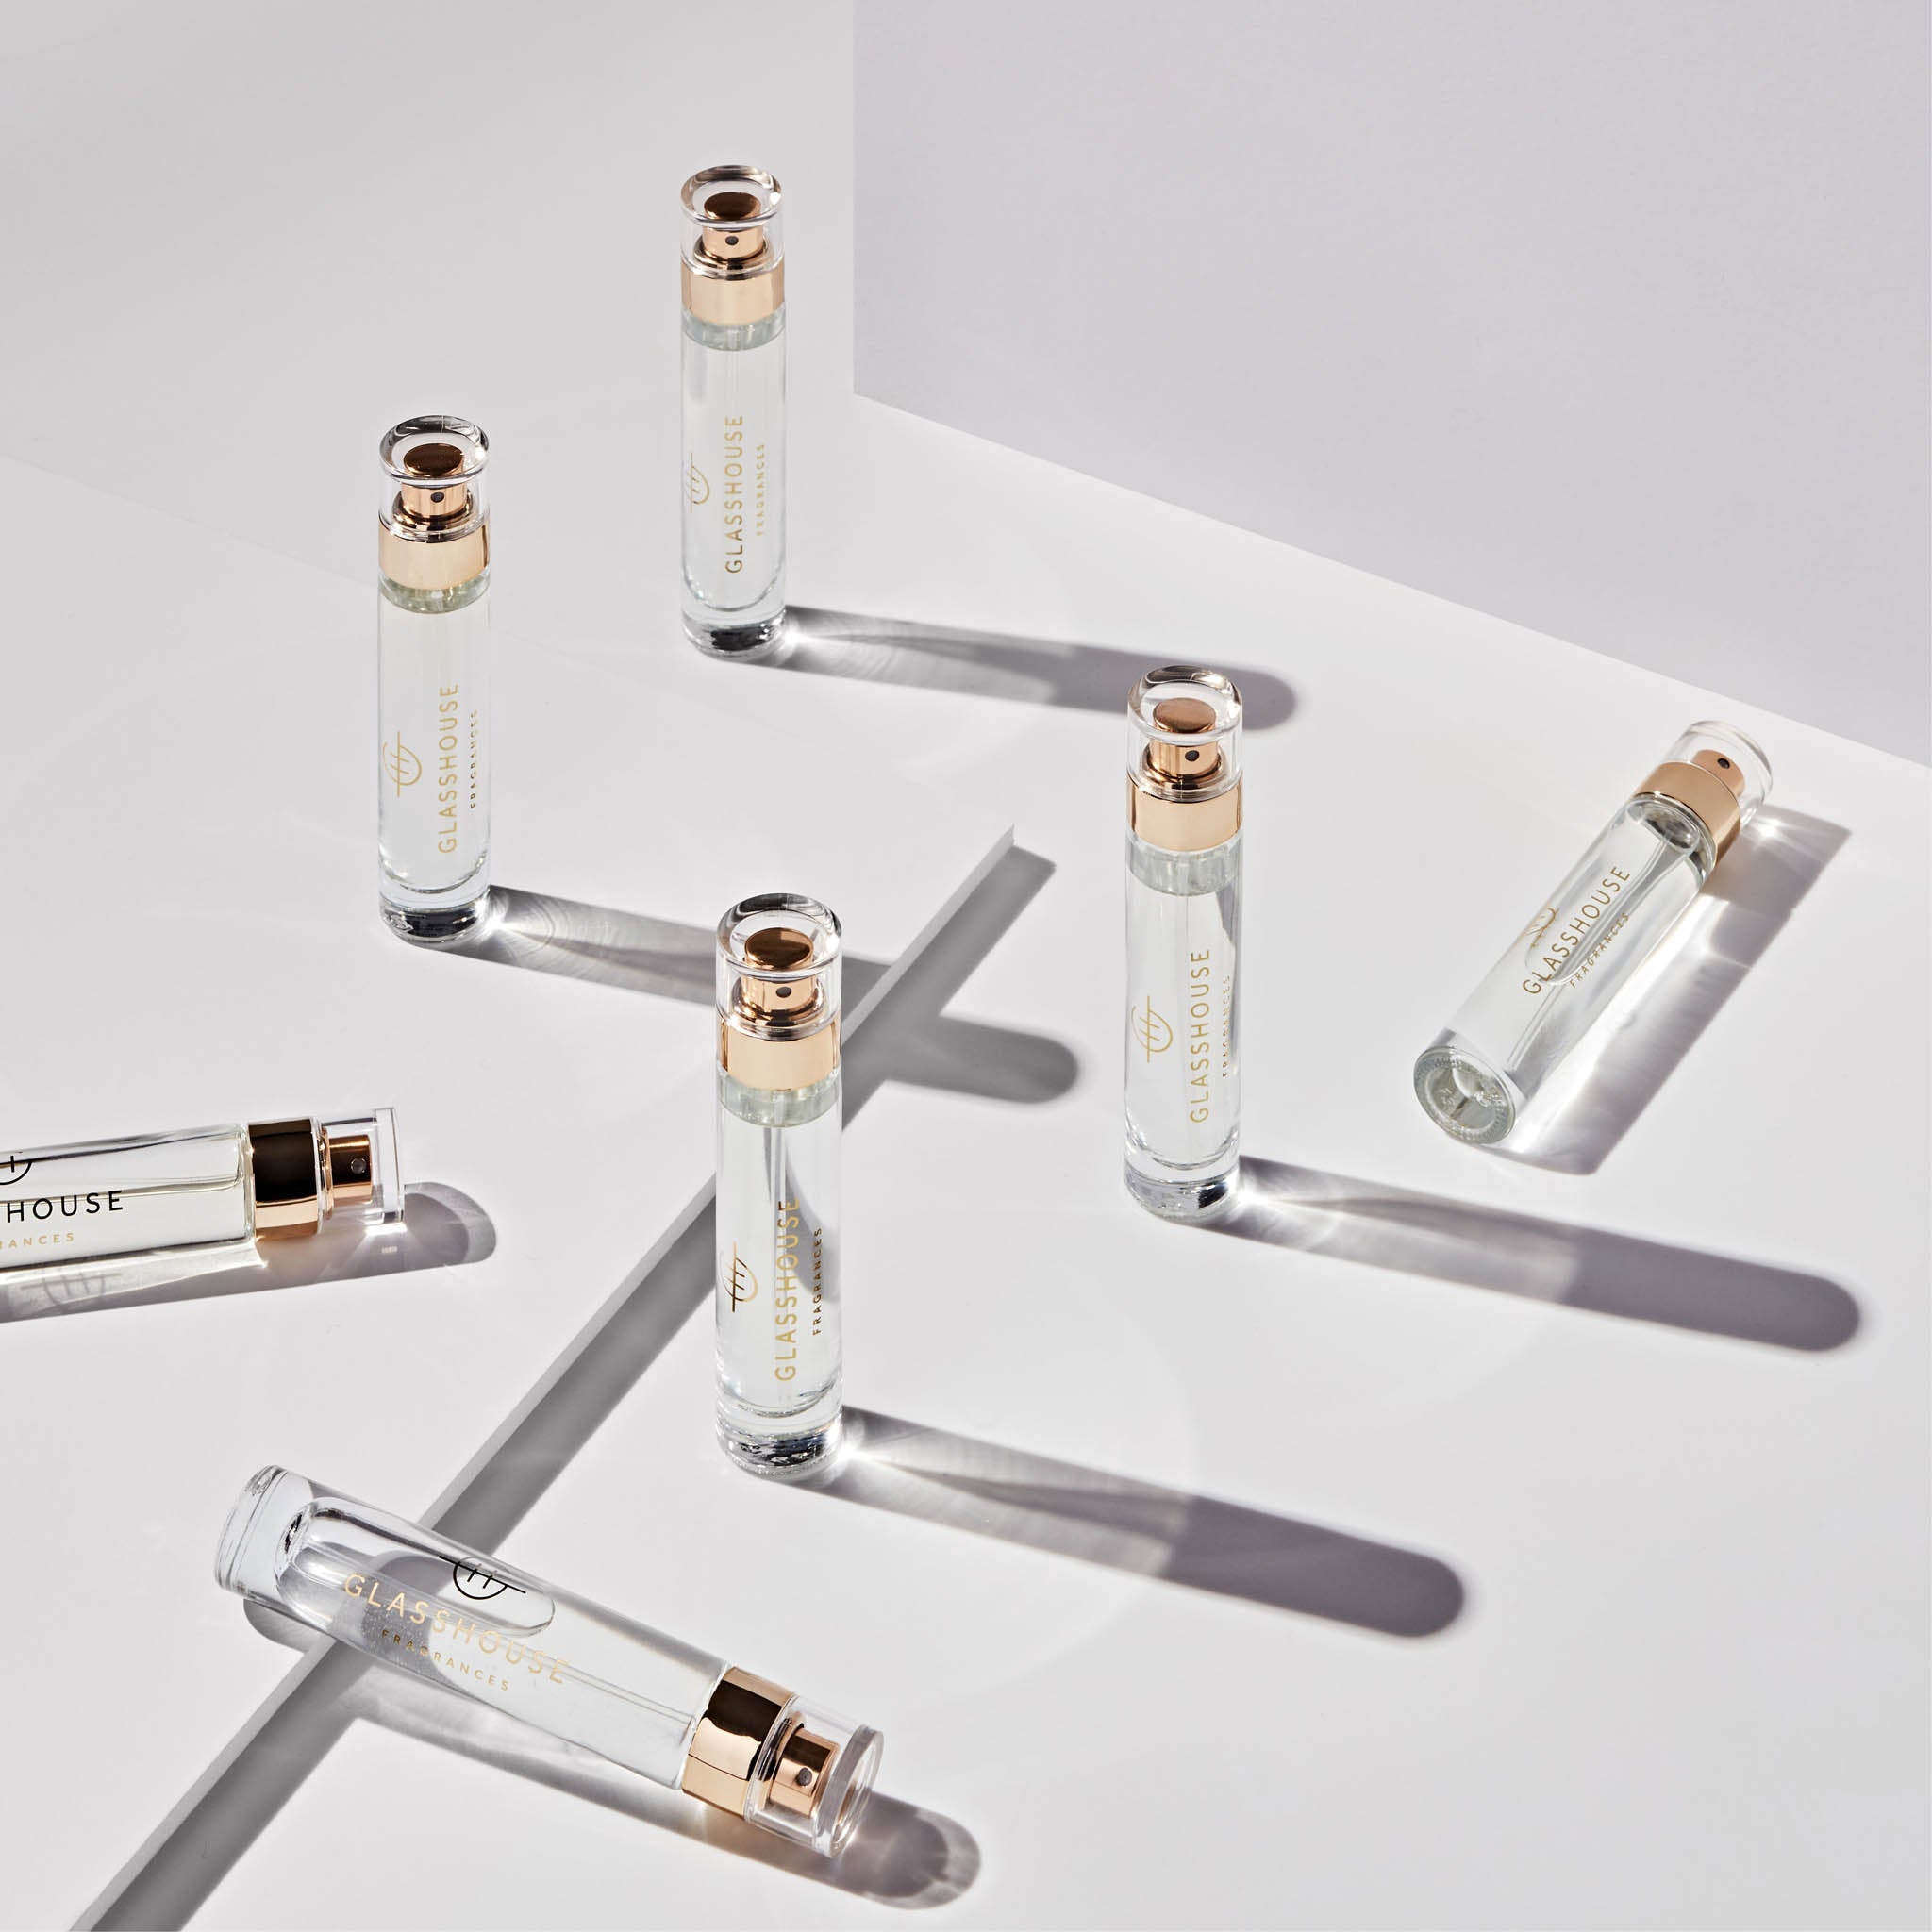 Glasshouse Fragrances 14mL Eau de Parfum multiple spray vials arranged across a white tabletop